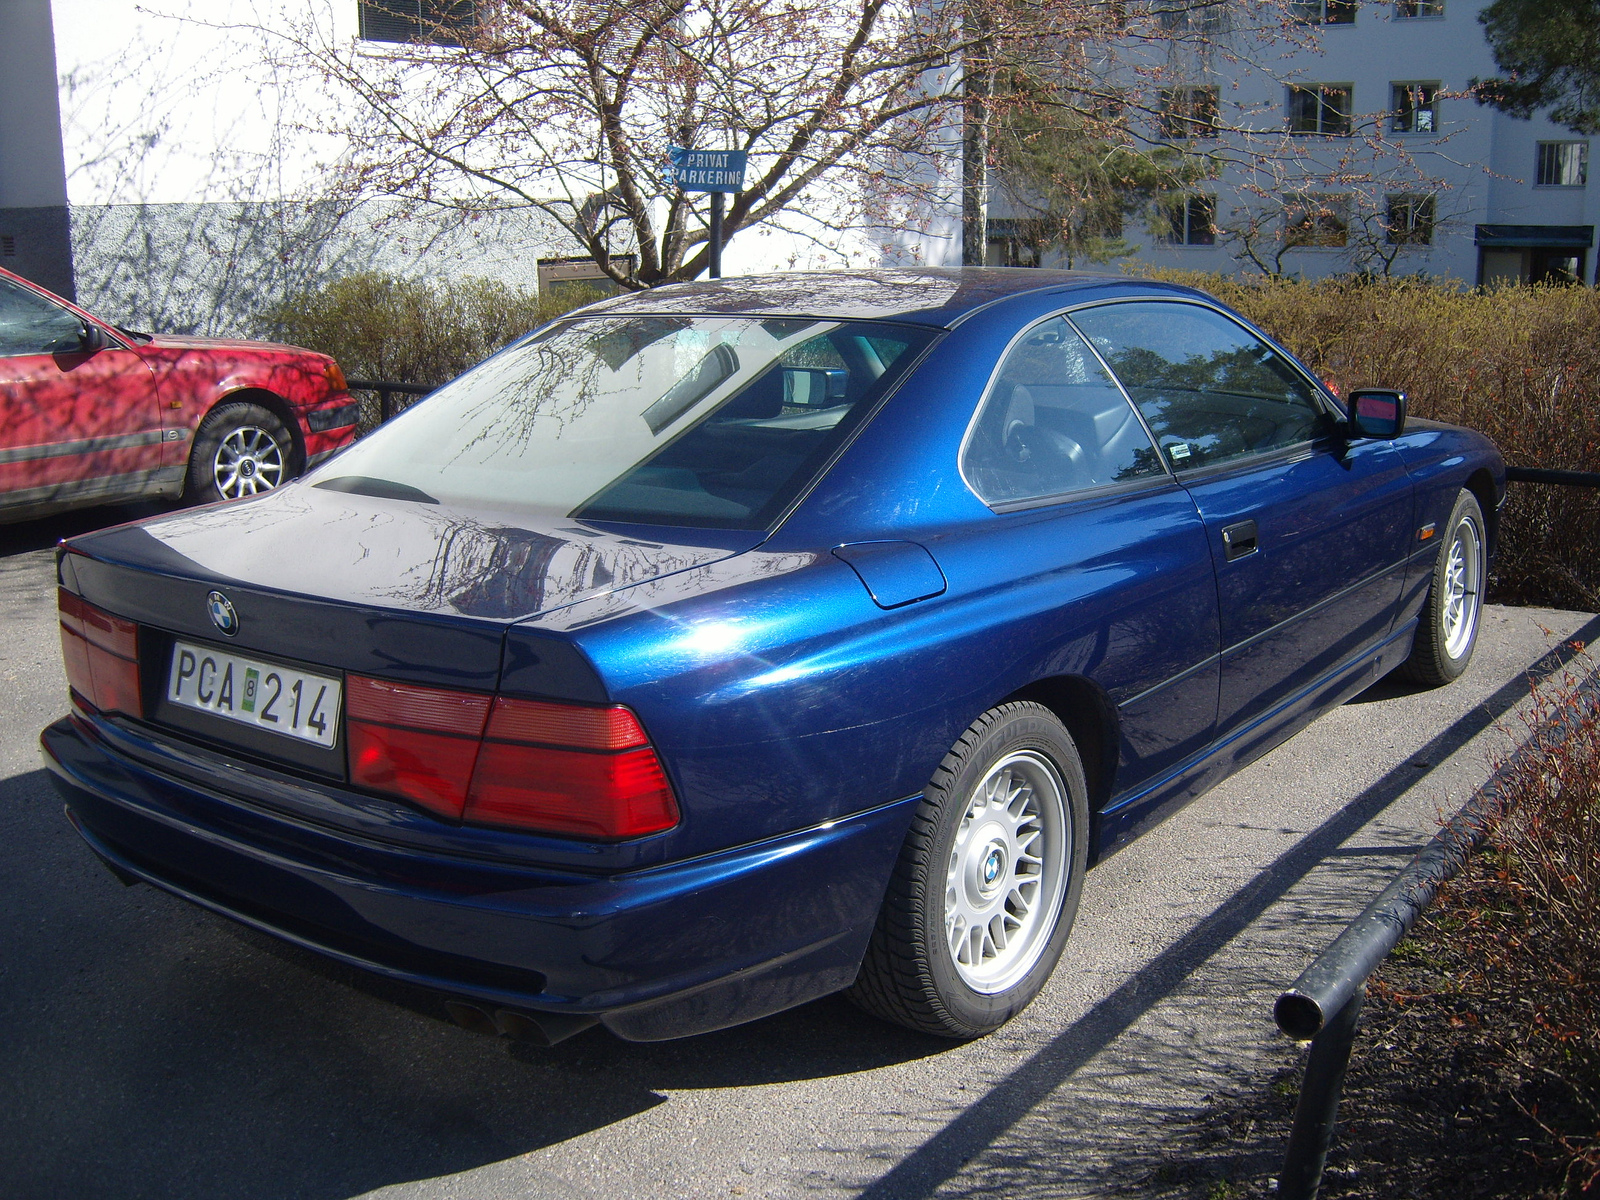 BMW 850iA E31 1991 MAURITIUSBLAU METALLIC (287) | Flickr - Photo ...